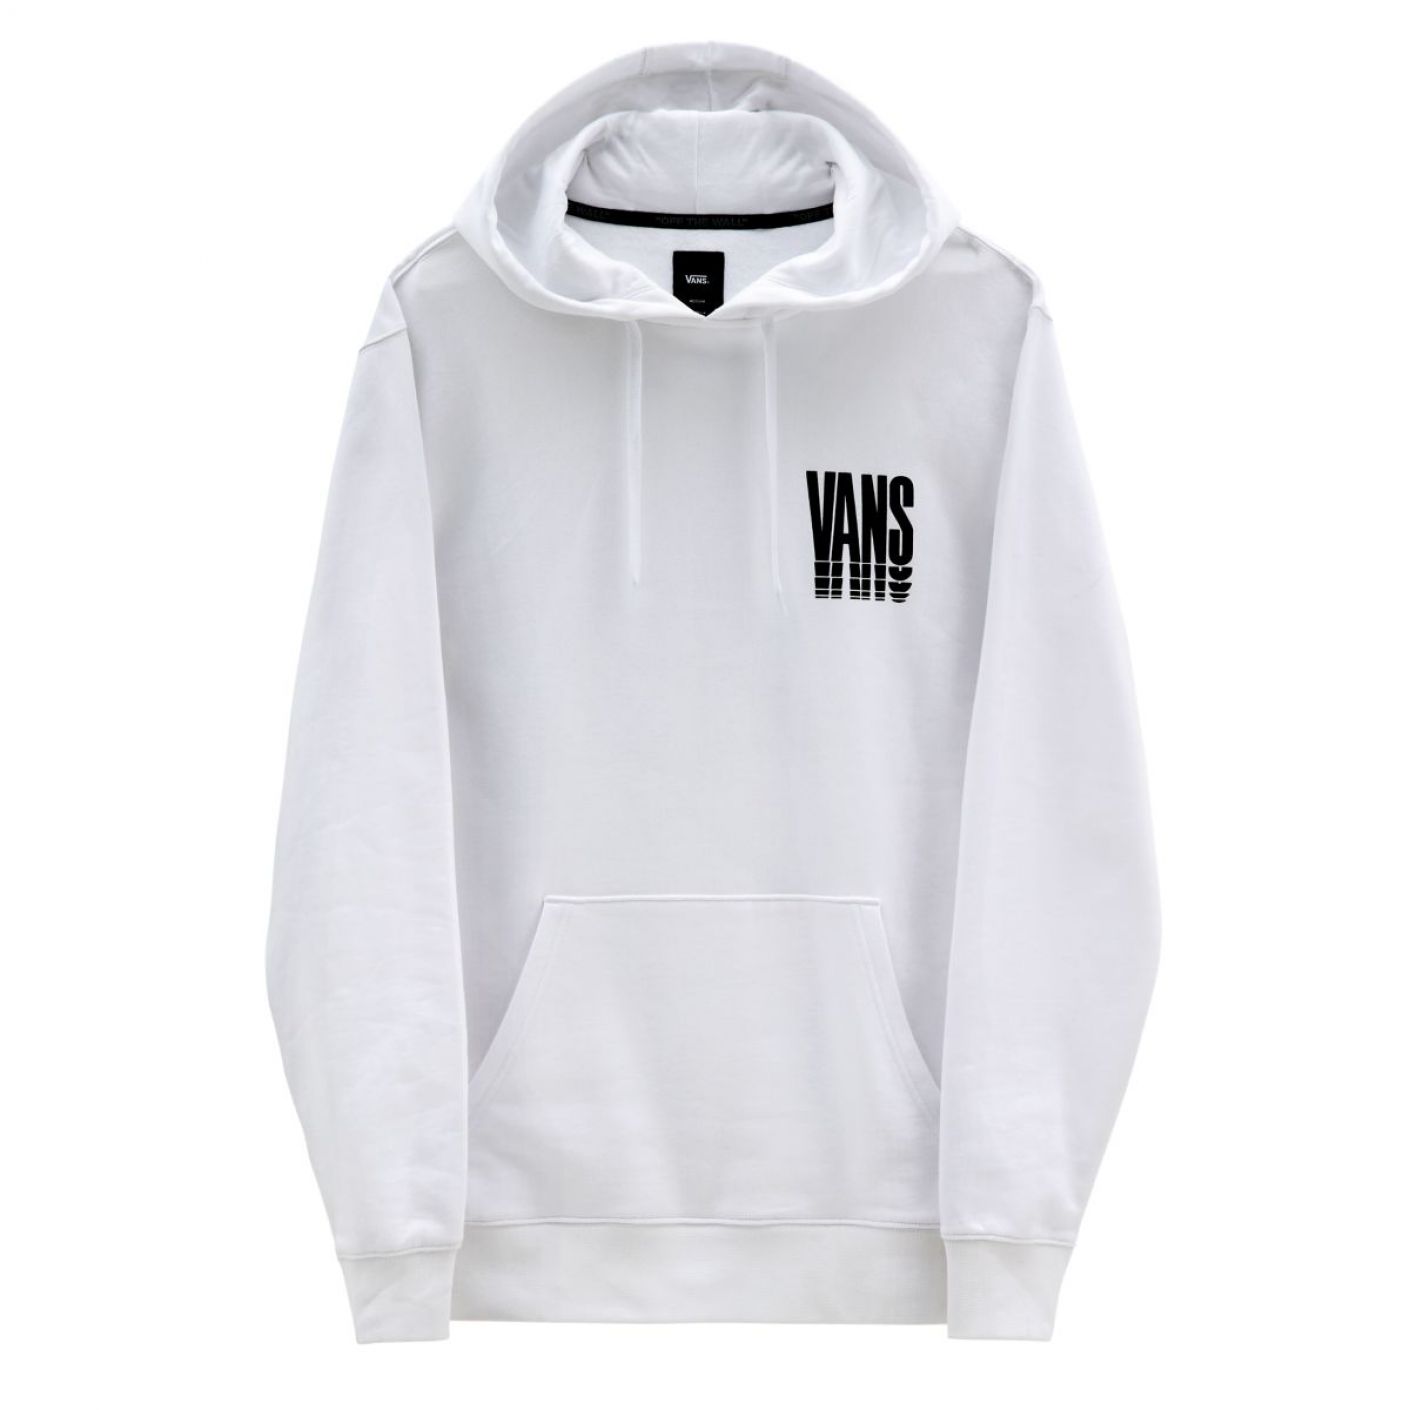 Vans Reflect Sweatshirt with White Hood